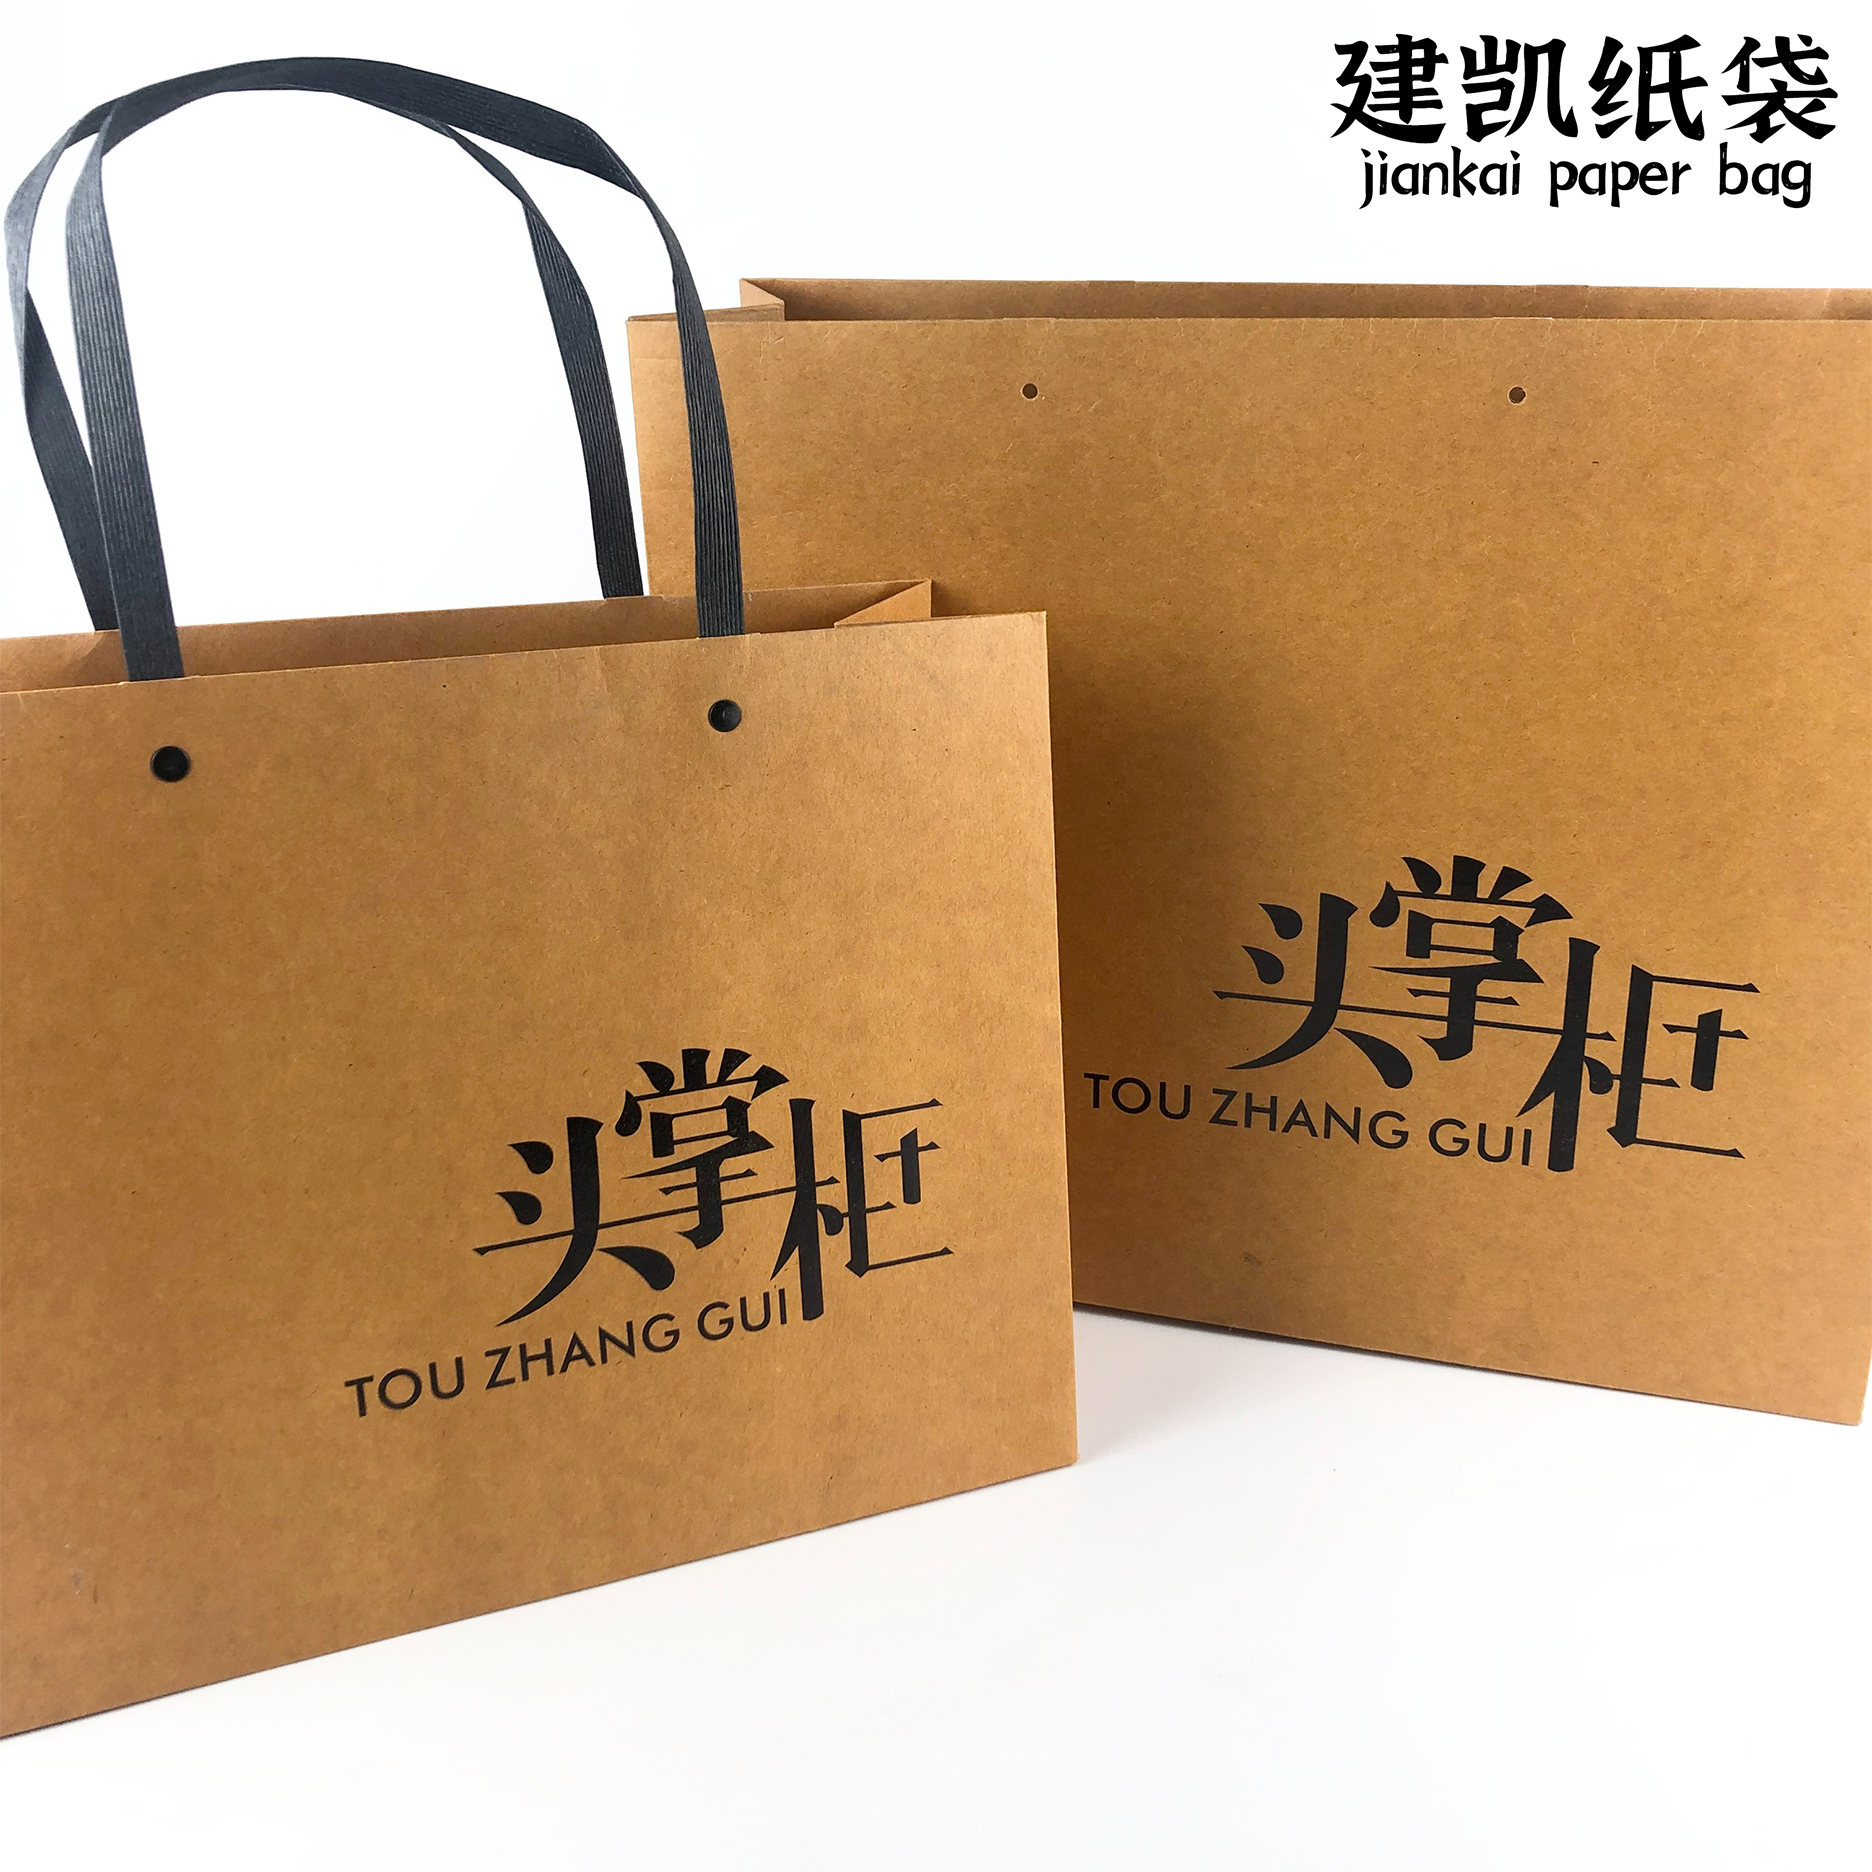 黄底蓝字-建凯纸袋设计印刷企业包 订做礼品服装袋私人定制logo